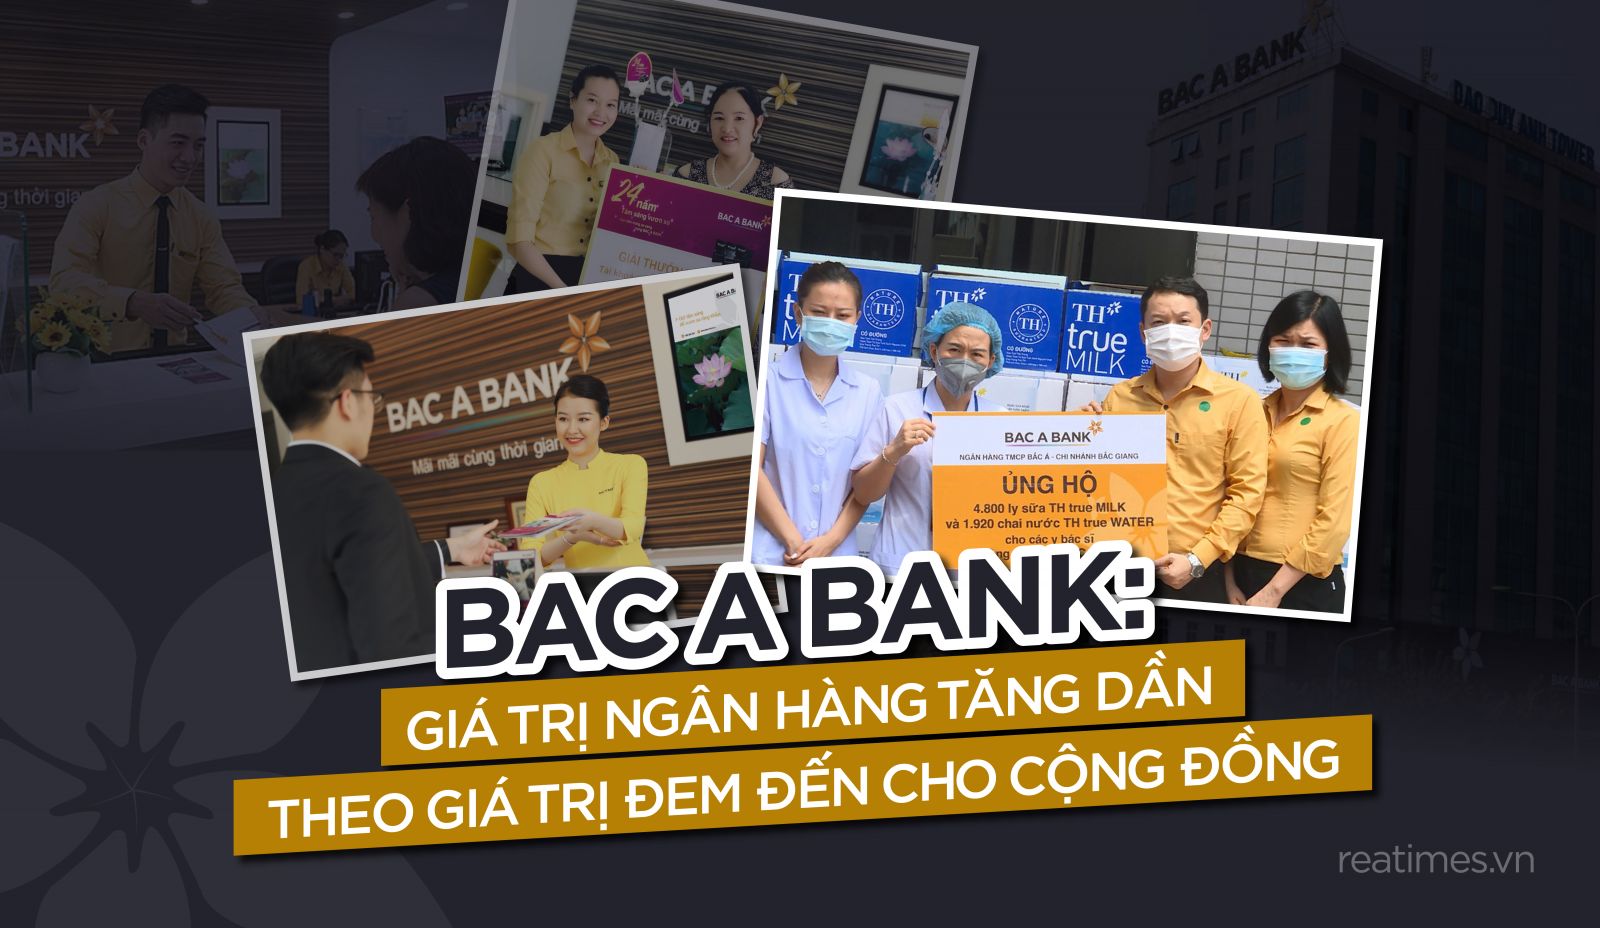 Bac A Bank: Giá trị ngân hàng tăng dần theo giá trị đem đến cho cộng đồng